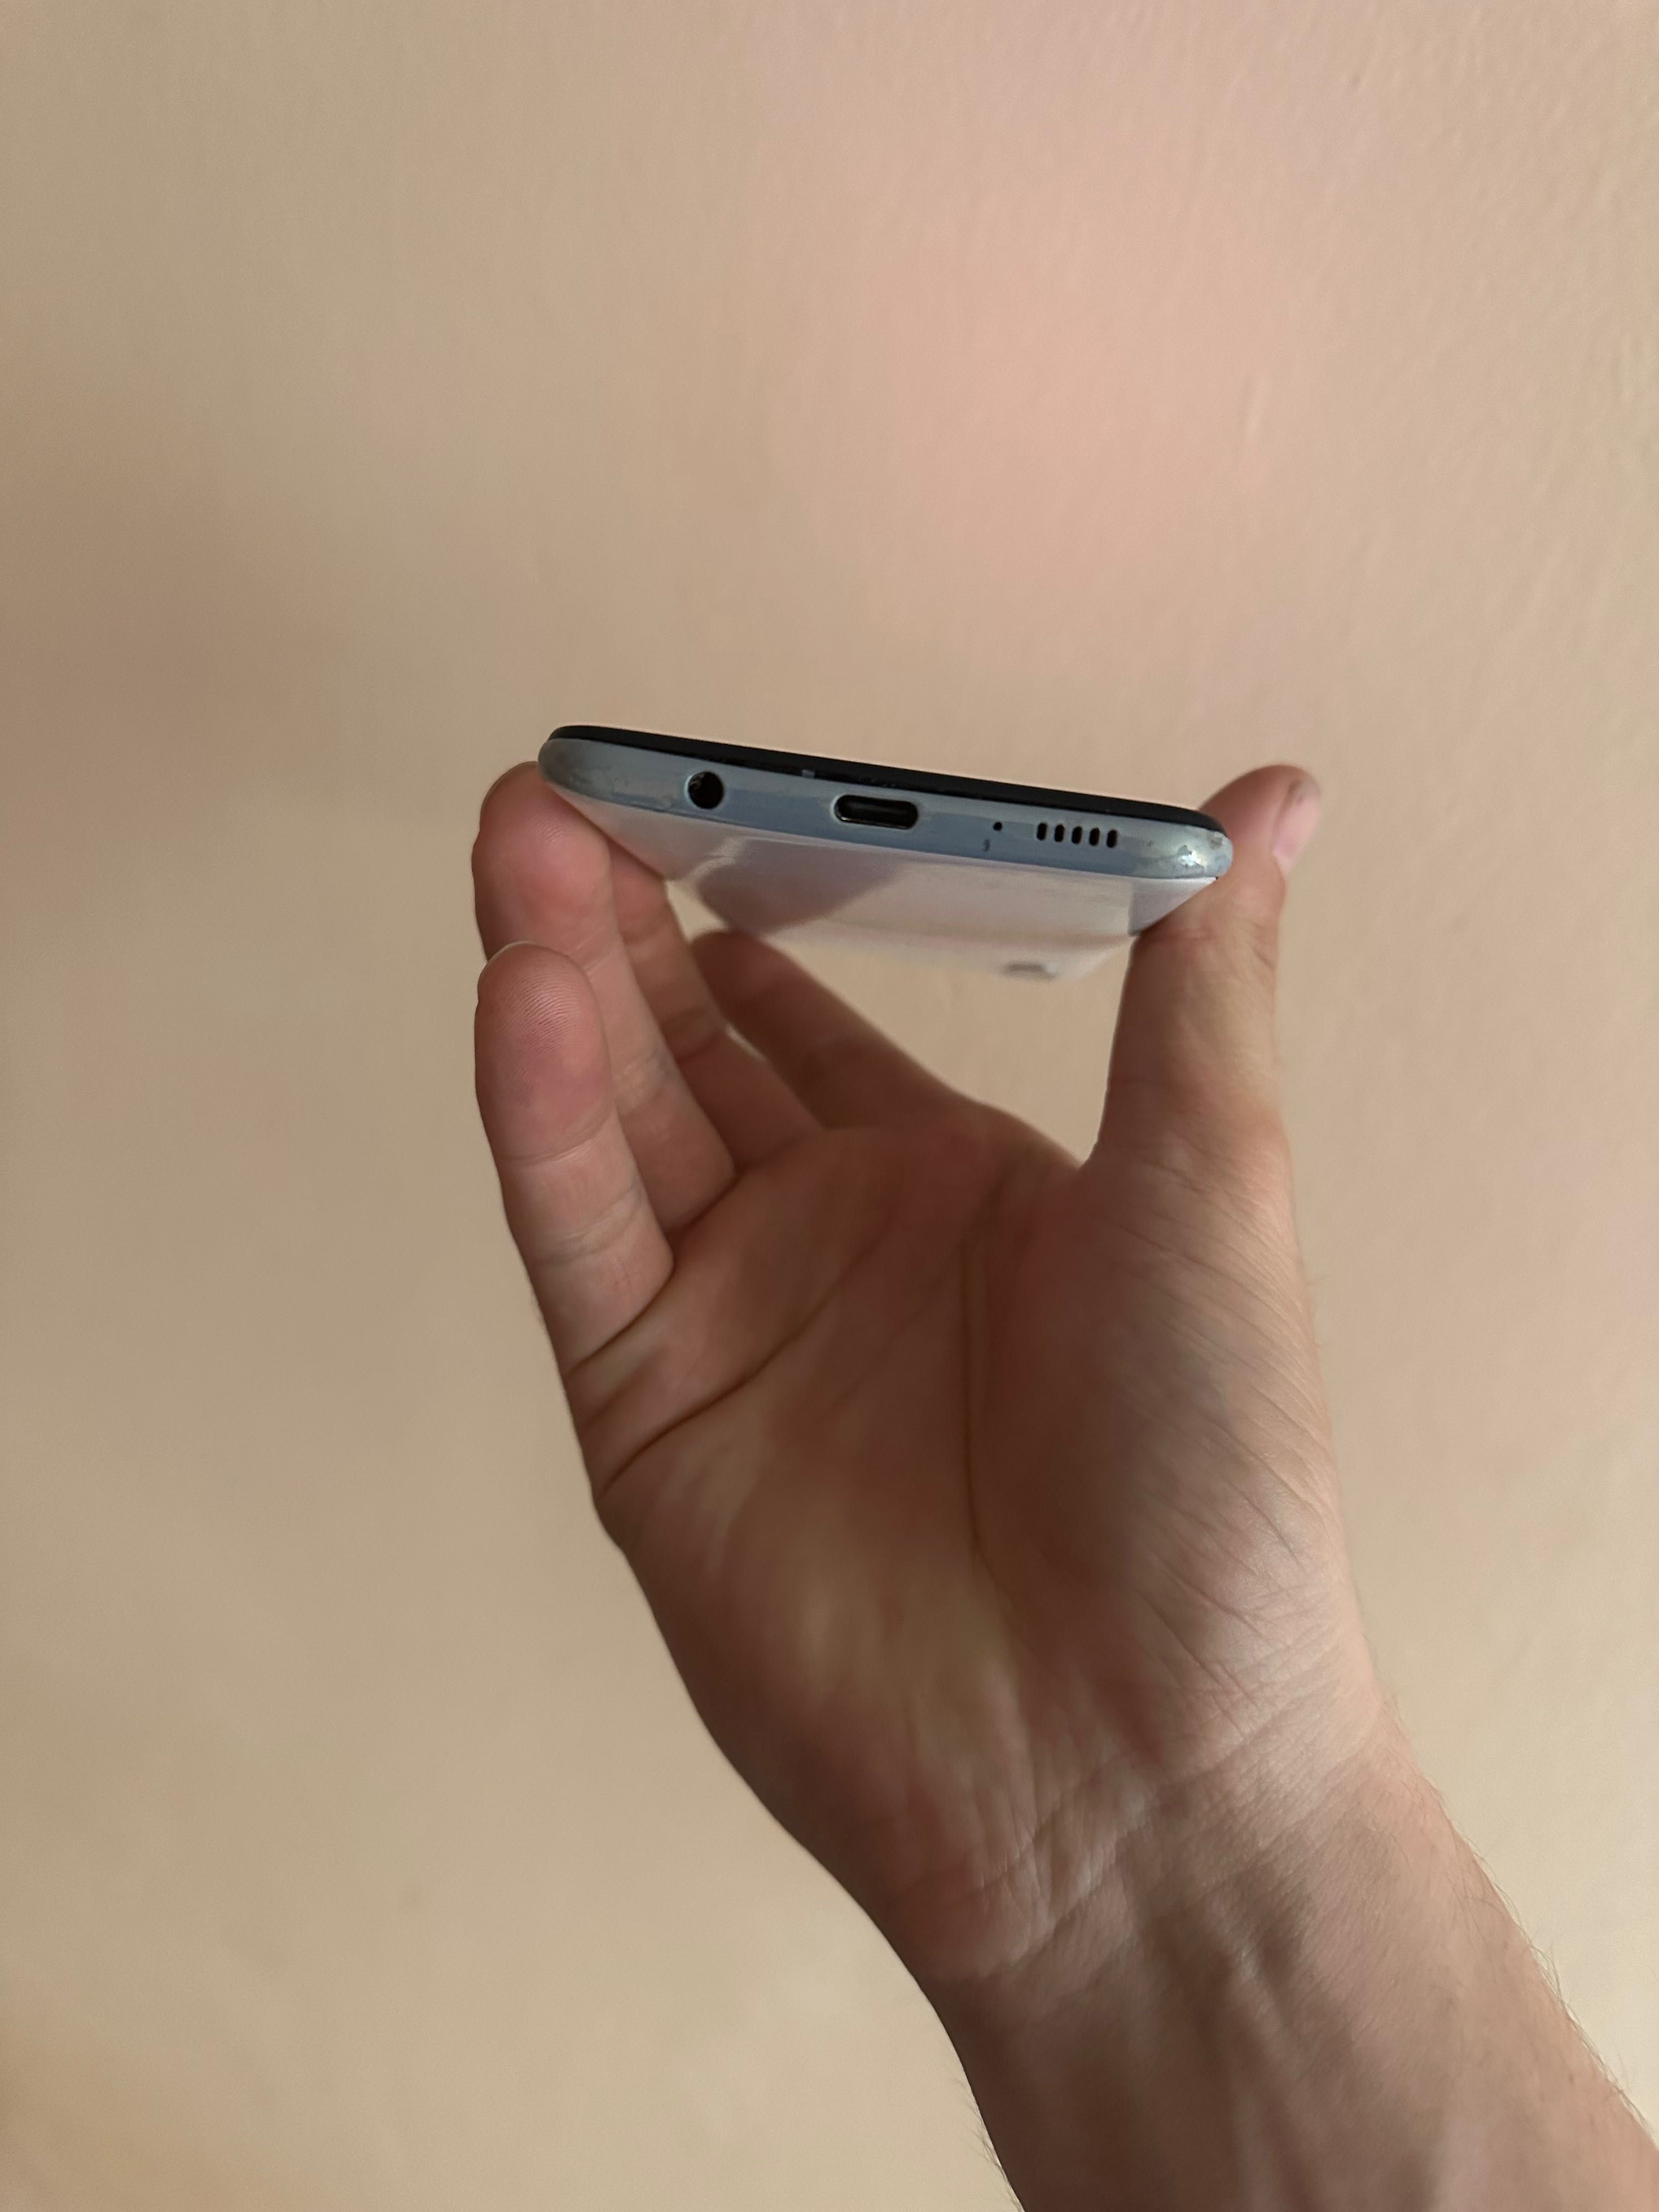 Samsung A50 жаксы жагдайда катпайт рабочий телефон самсунг